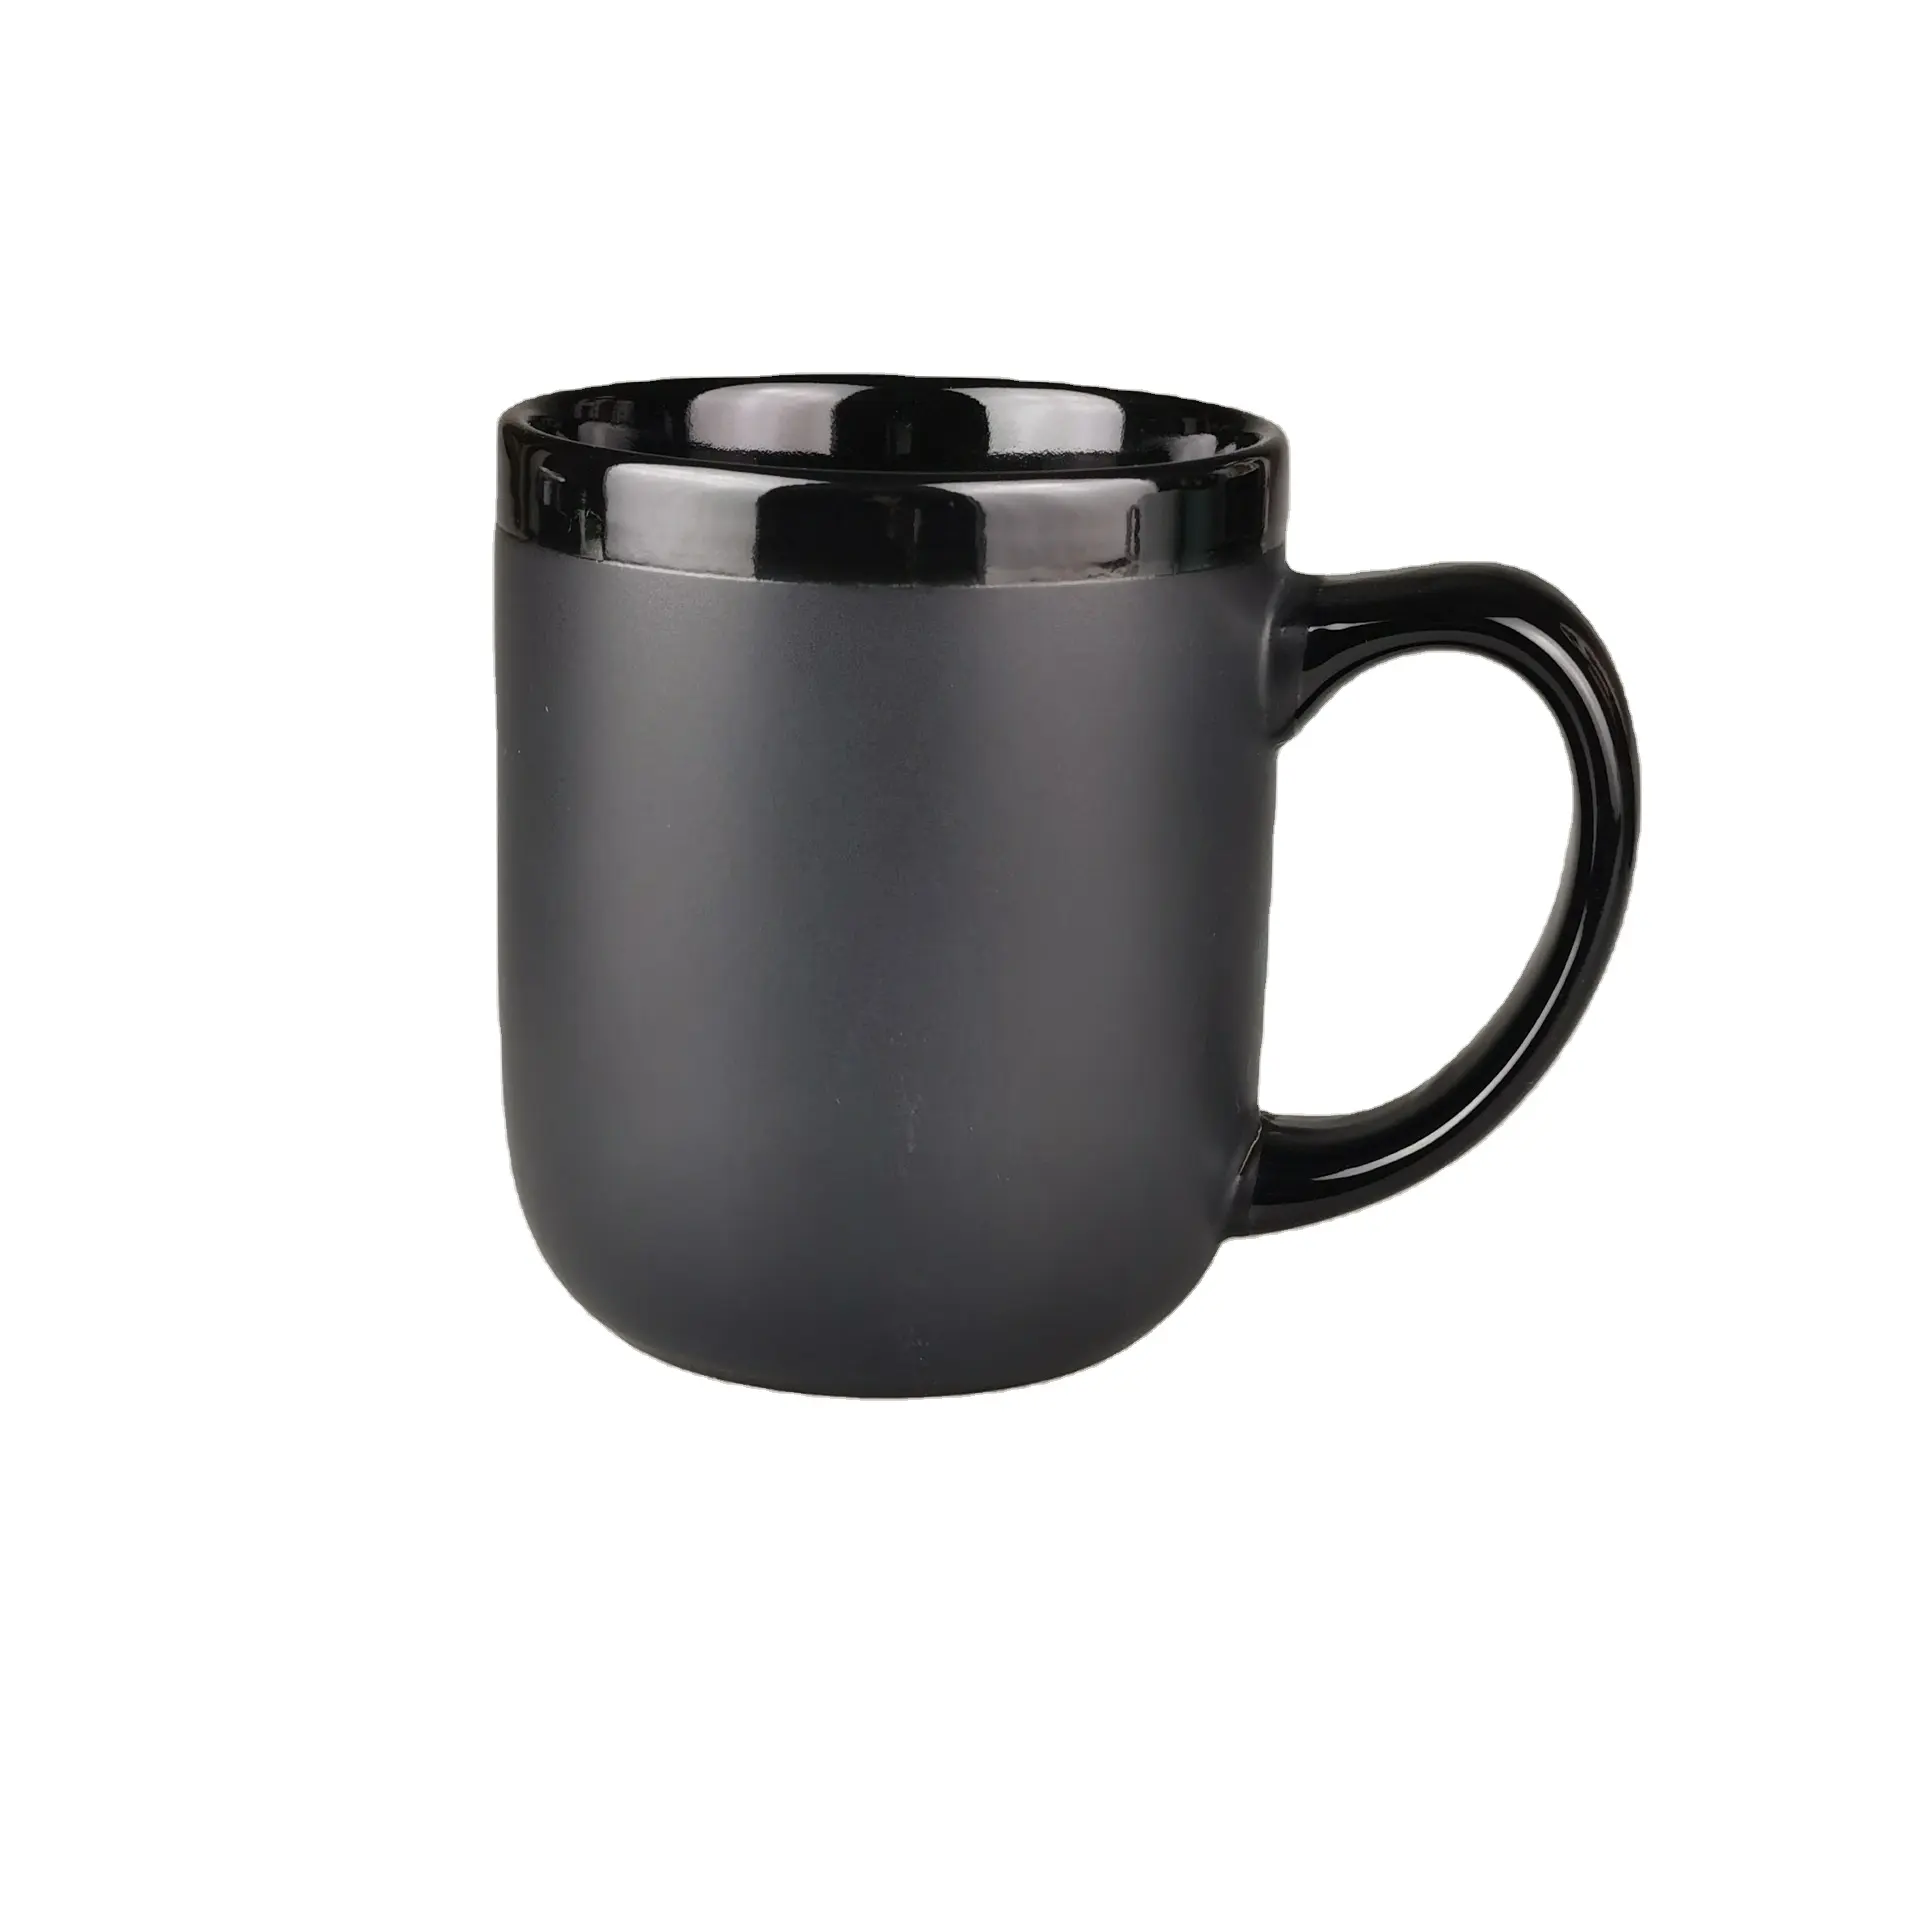 Оптовая продажа, матовая черная поверхность, персонализированная керамическая кружка с индивидуальным логотипом, кофейная кружка в форме барабана, круглая керамическая кружка